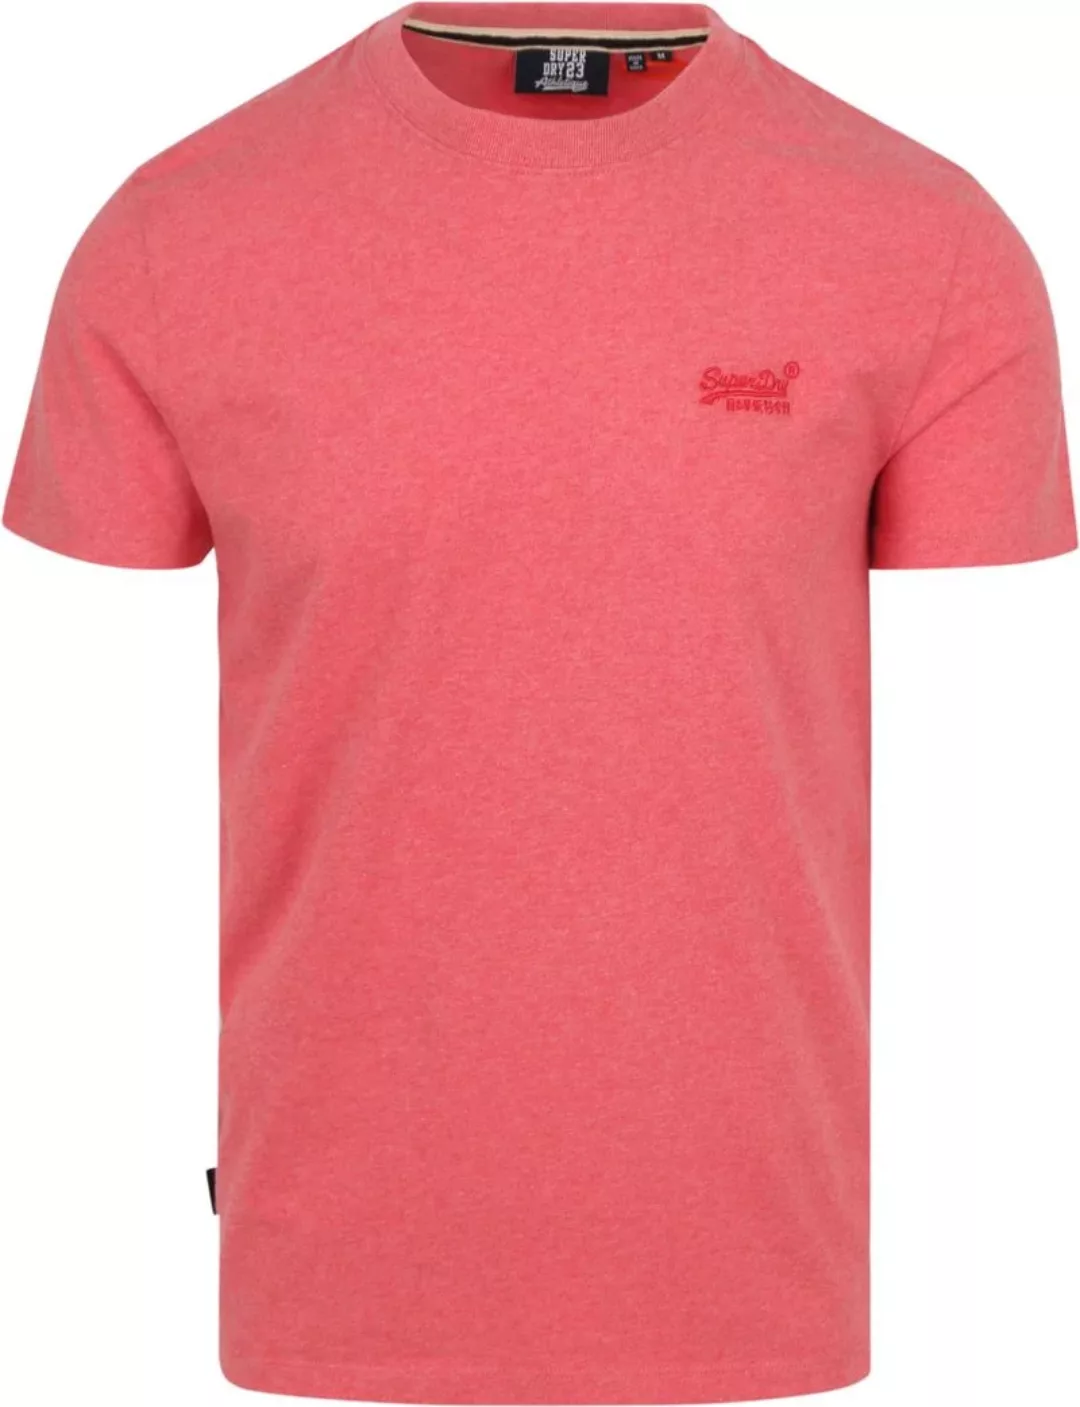 Superdry Classic T Shirt Melange Rosa - Größe M günstig online kaufen